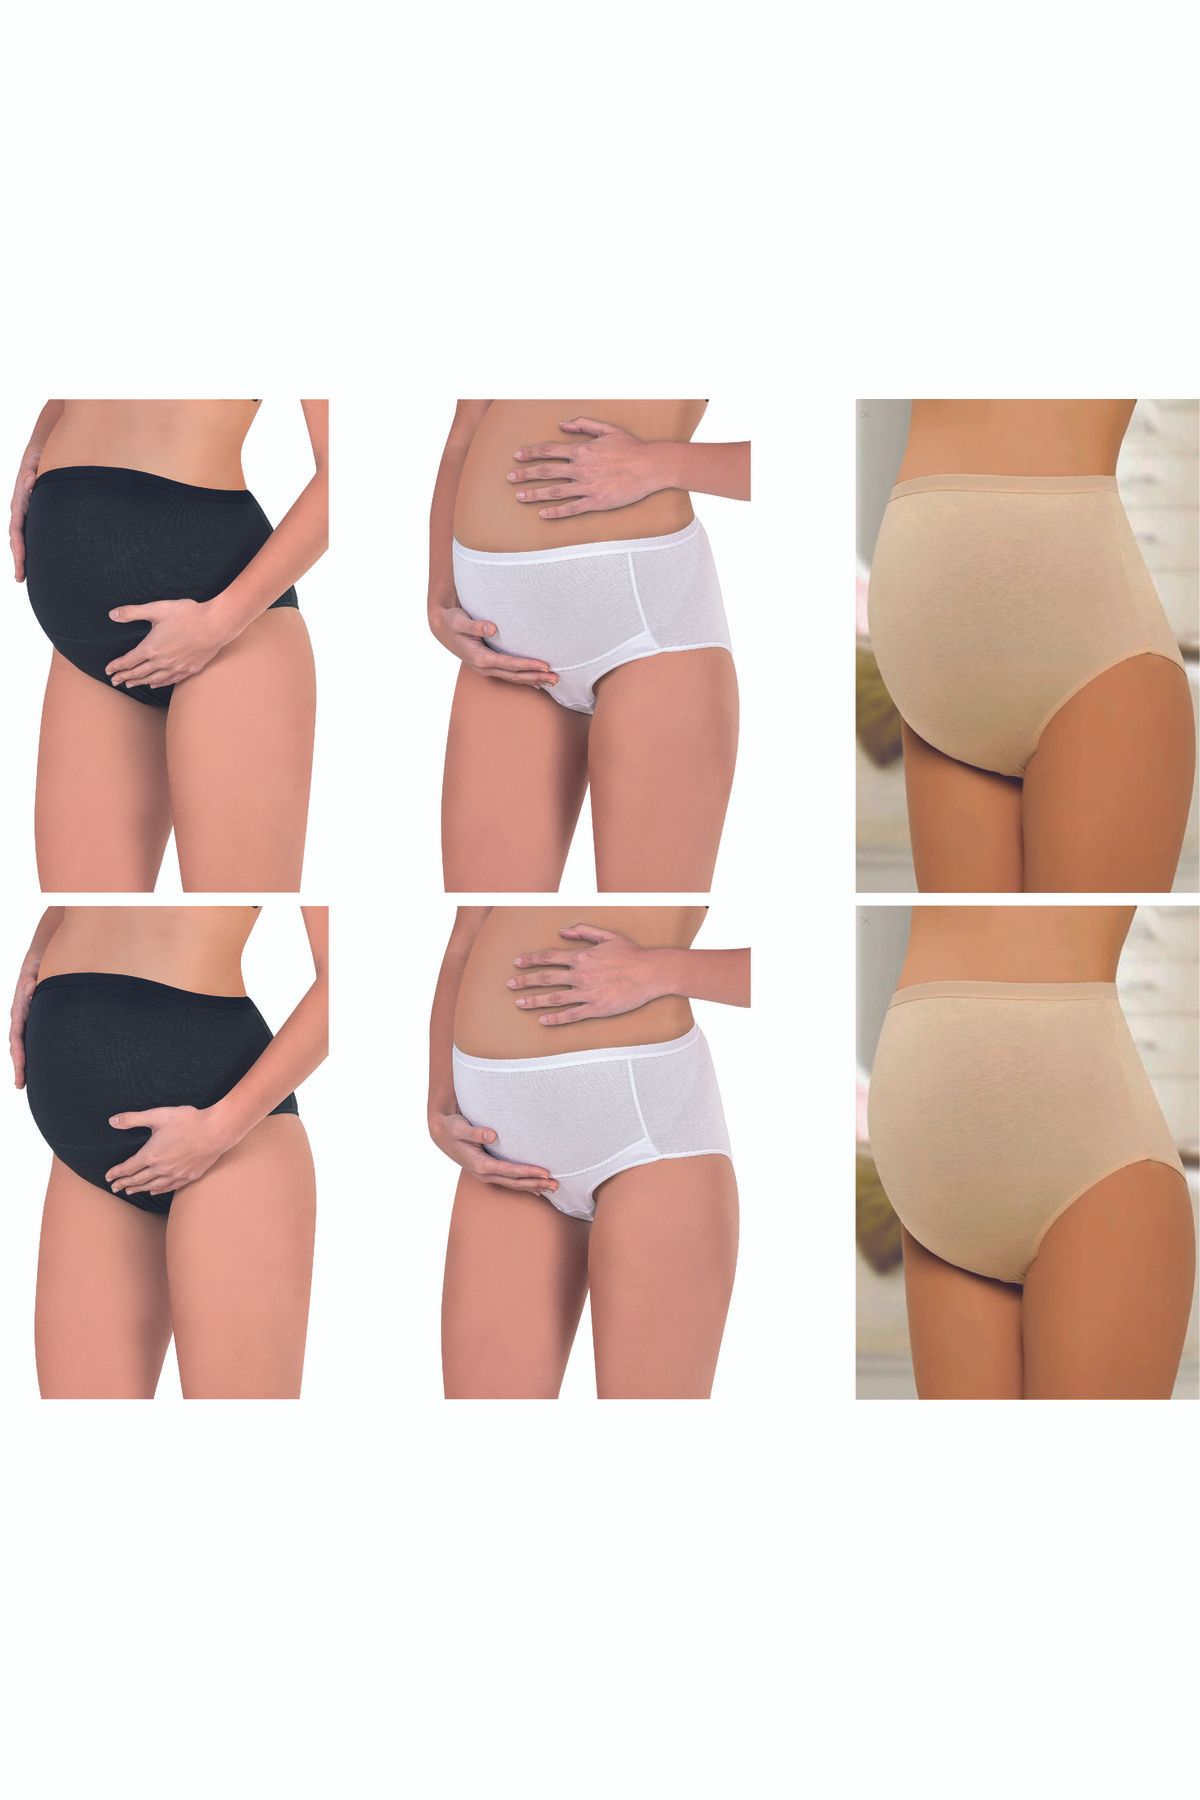 BORDO Underwear 5'li Paket Pamuklu Likralı Yumuşacık Esnek Hamile, Lohusa, Yüksek Bel, Bato, Hamile Külot